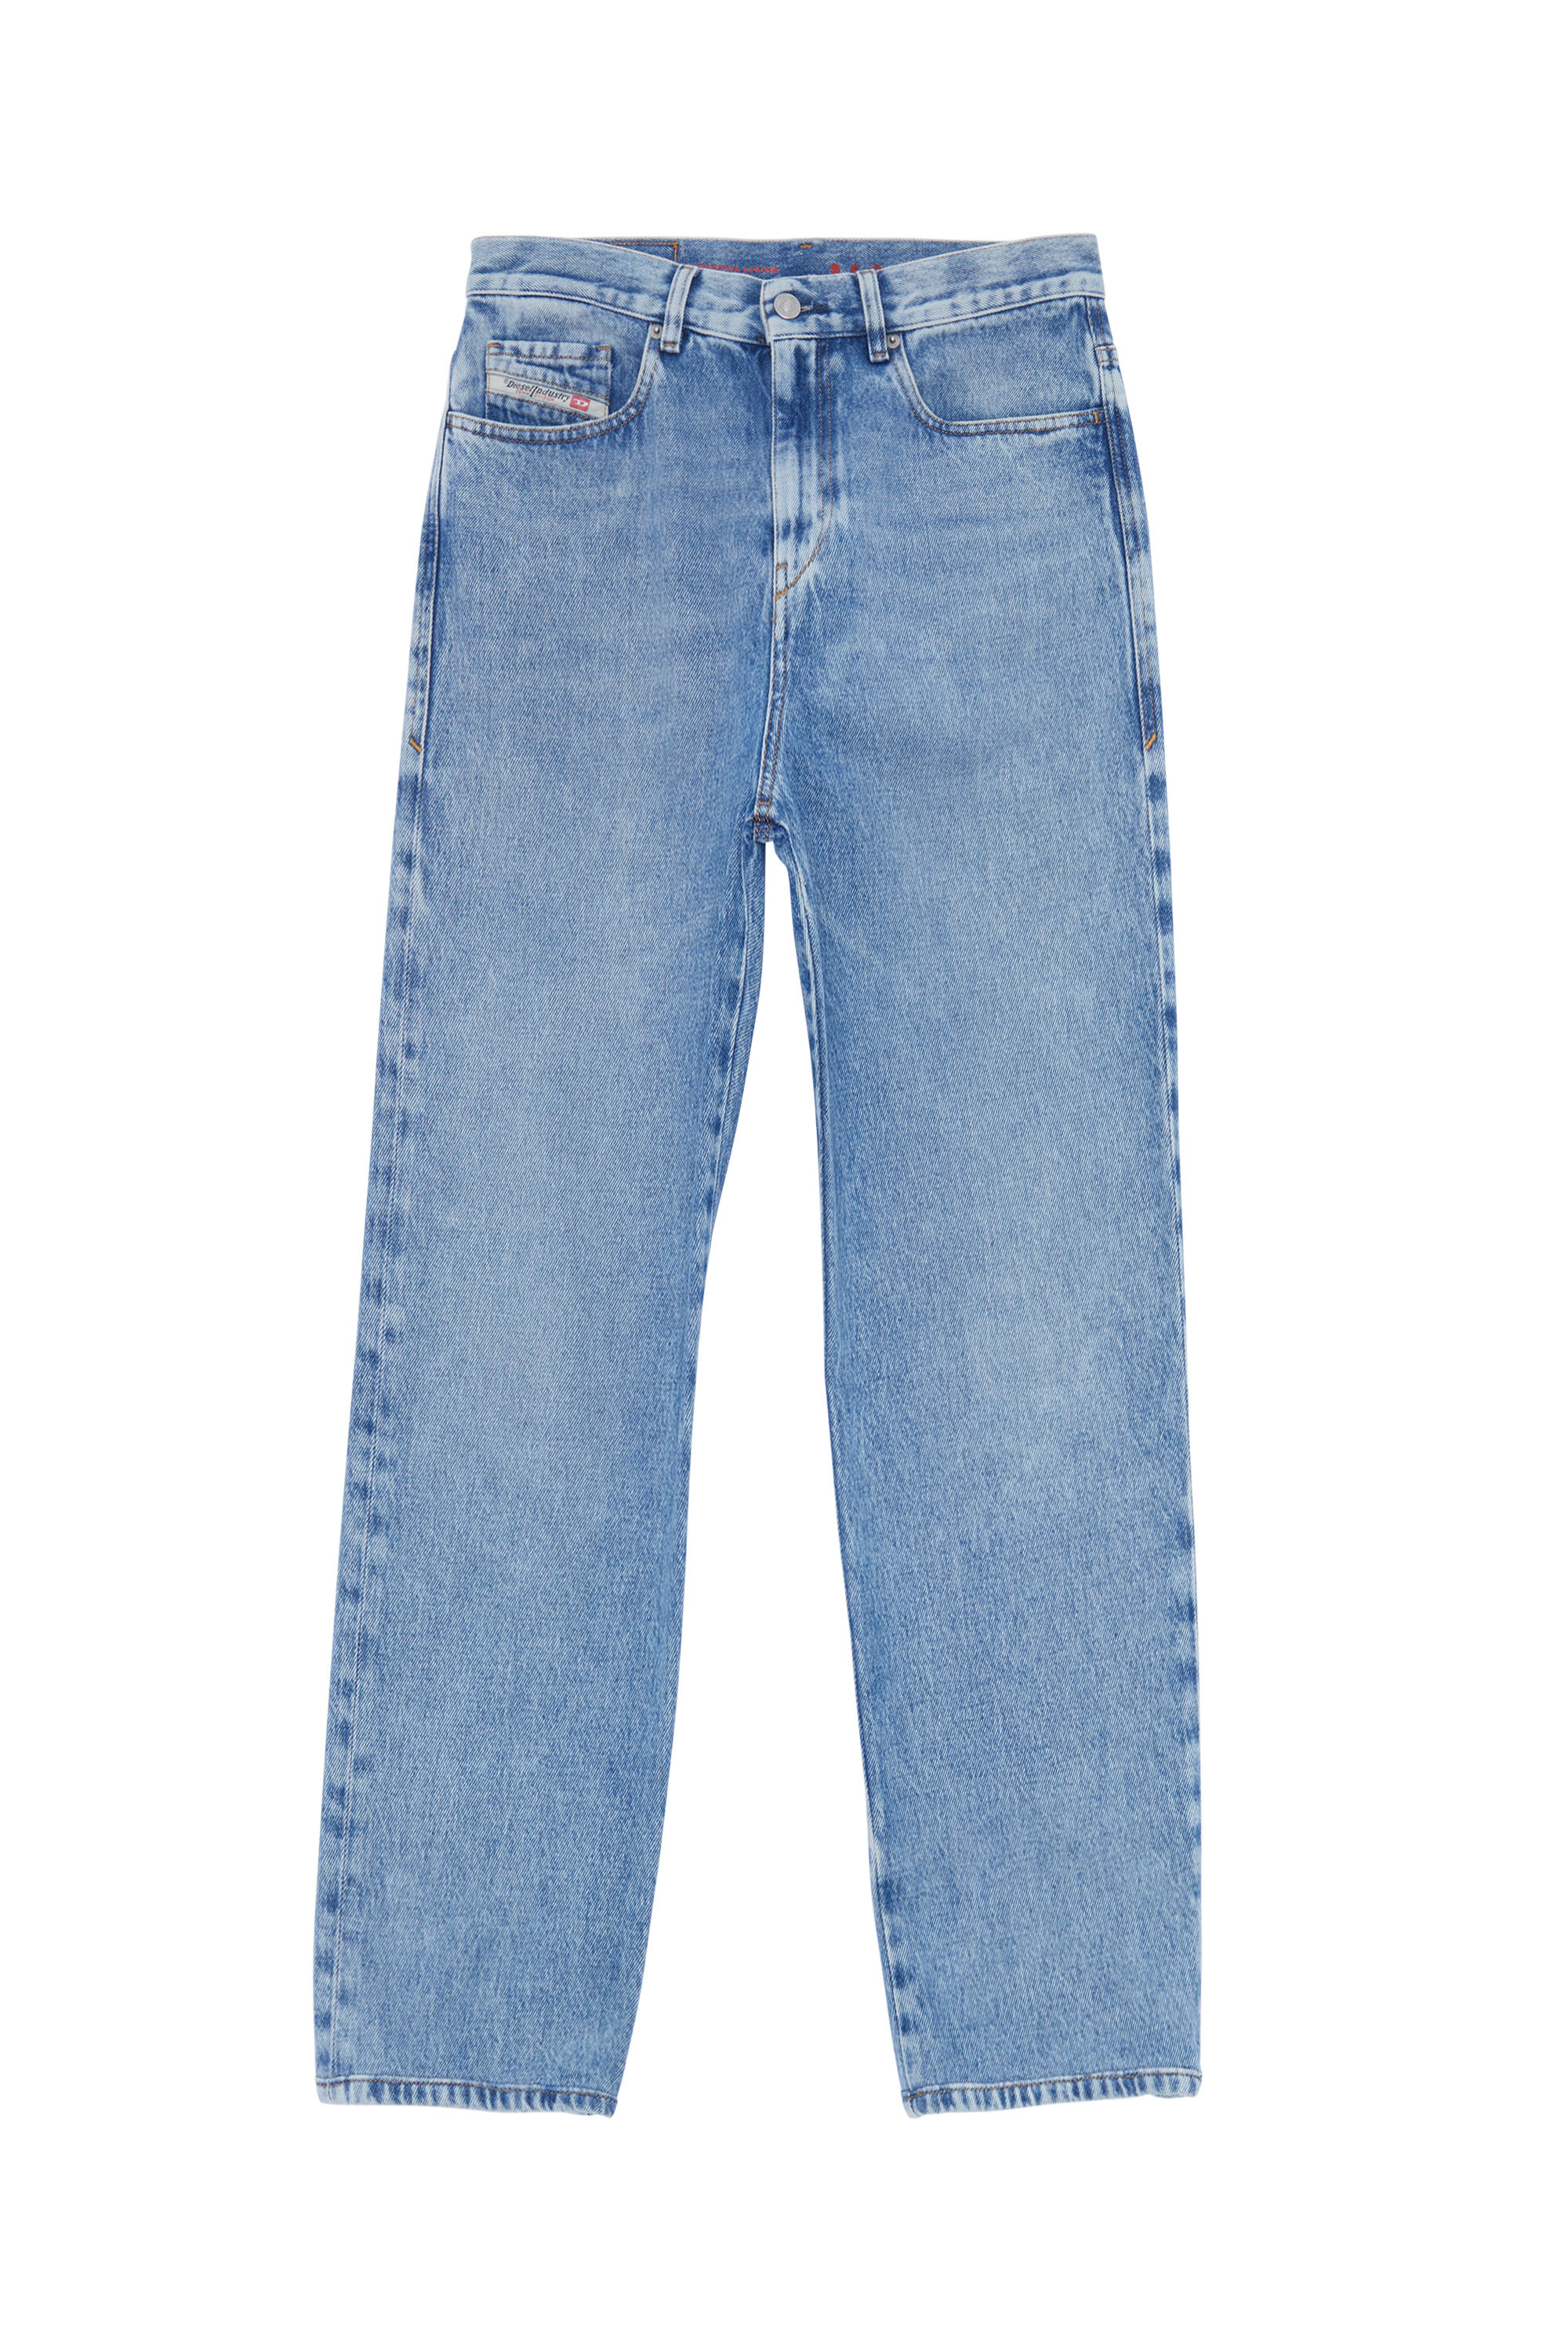 Diesel - Damen - Jeans Hellblau - Jeans - Damen - Blau